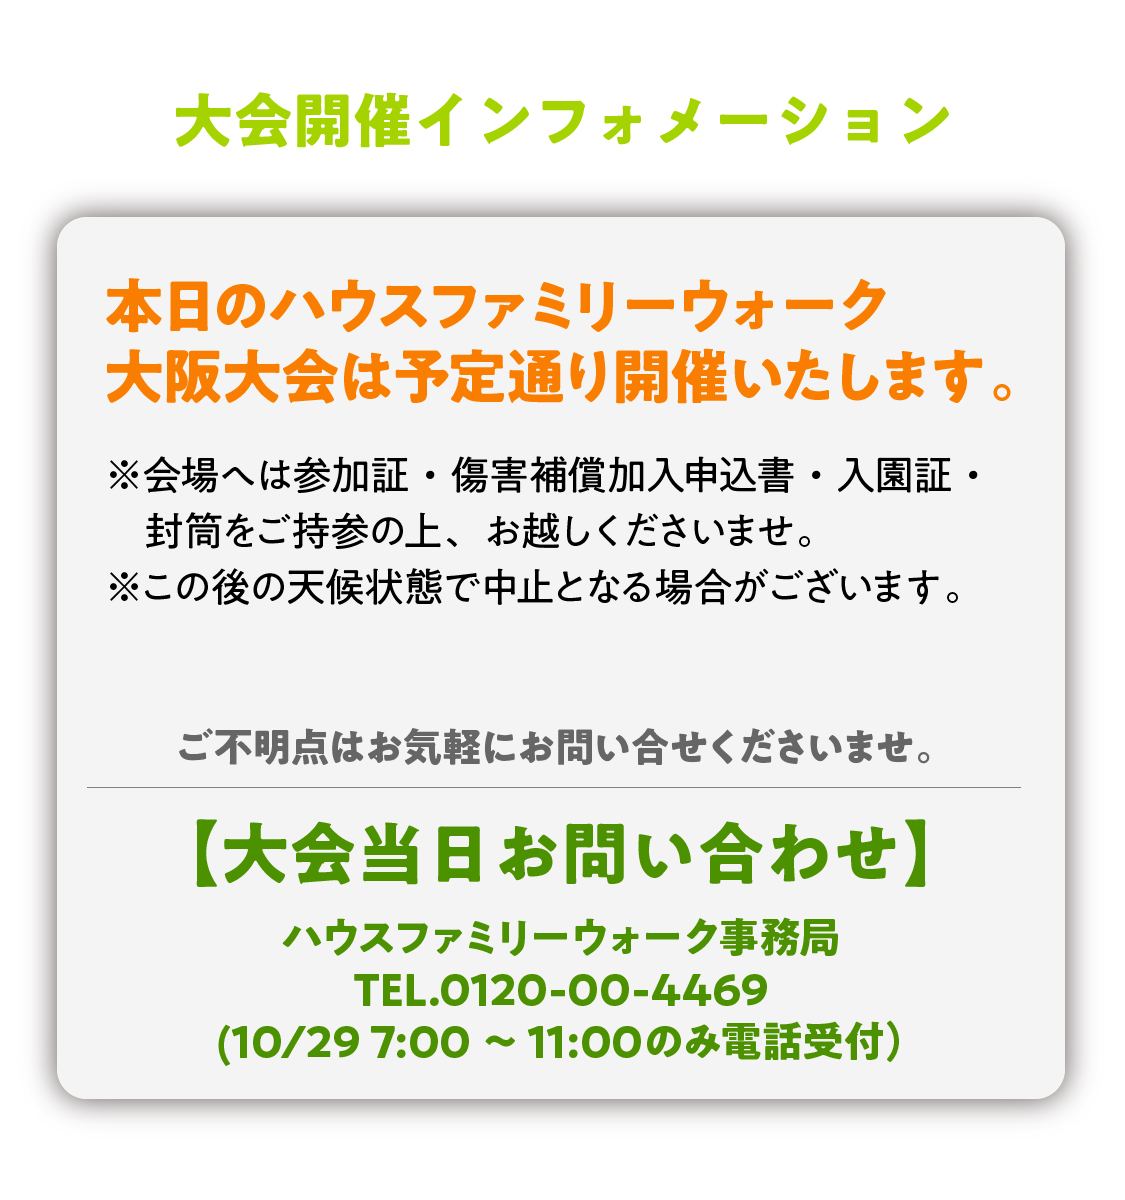 大会開催インフォメーション 本日のハウスファミリーウォーク大阪大会は予定通り開催いたします。